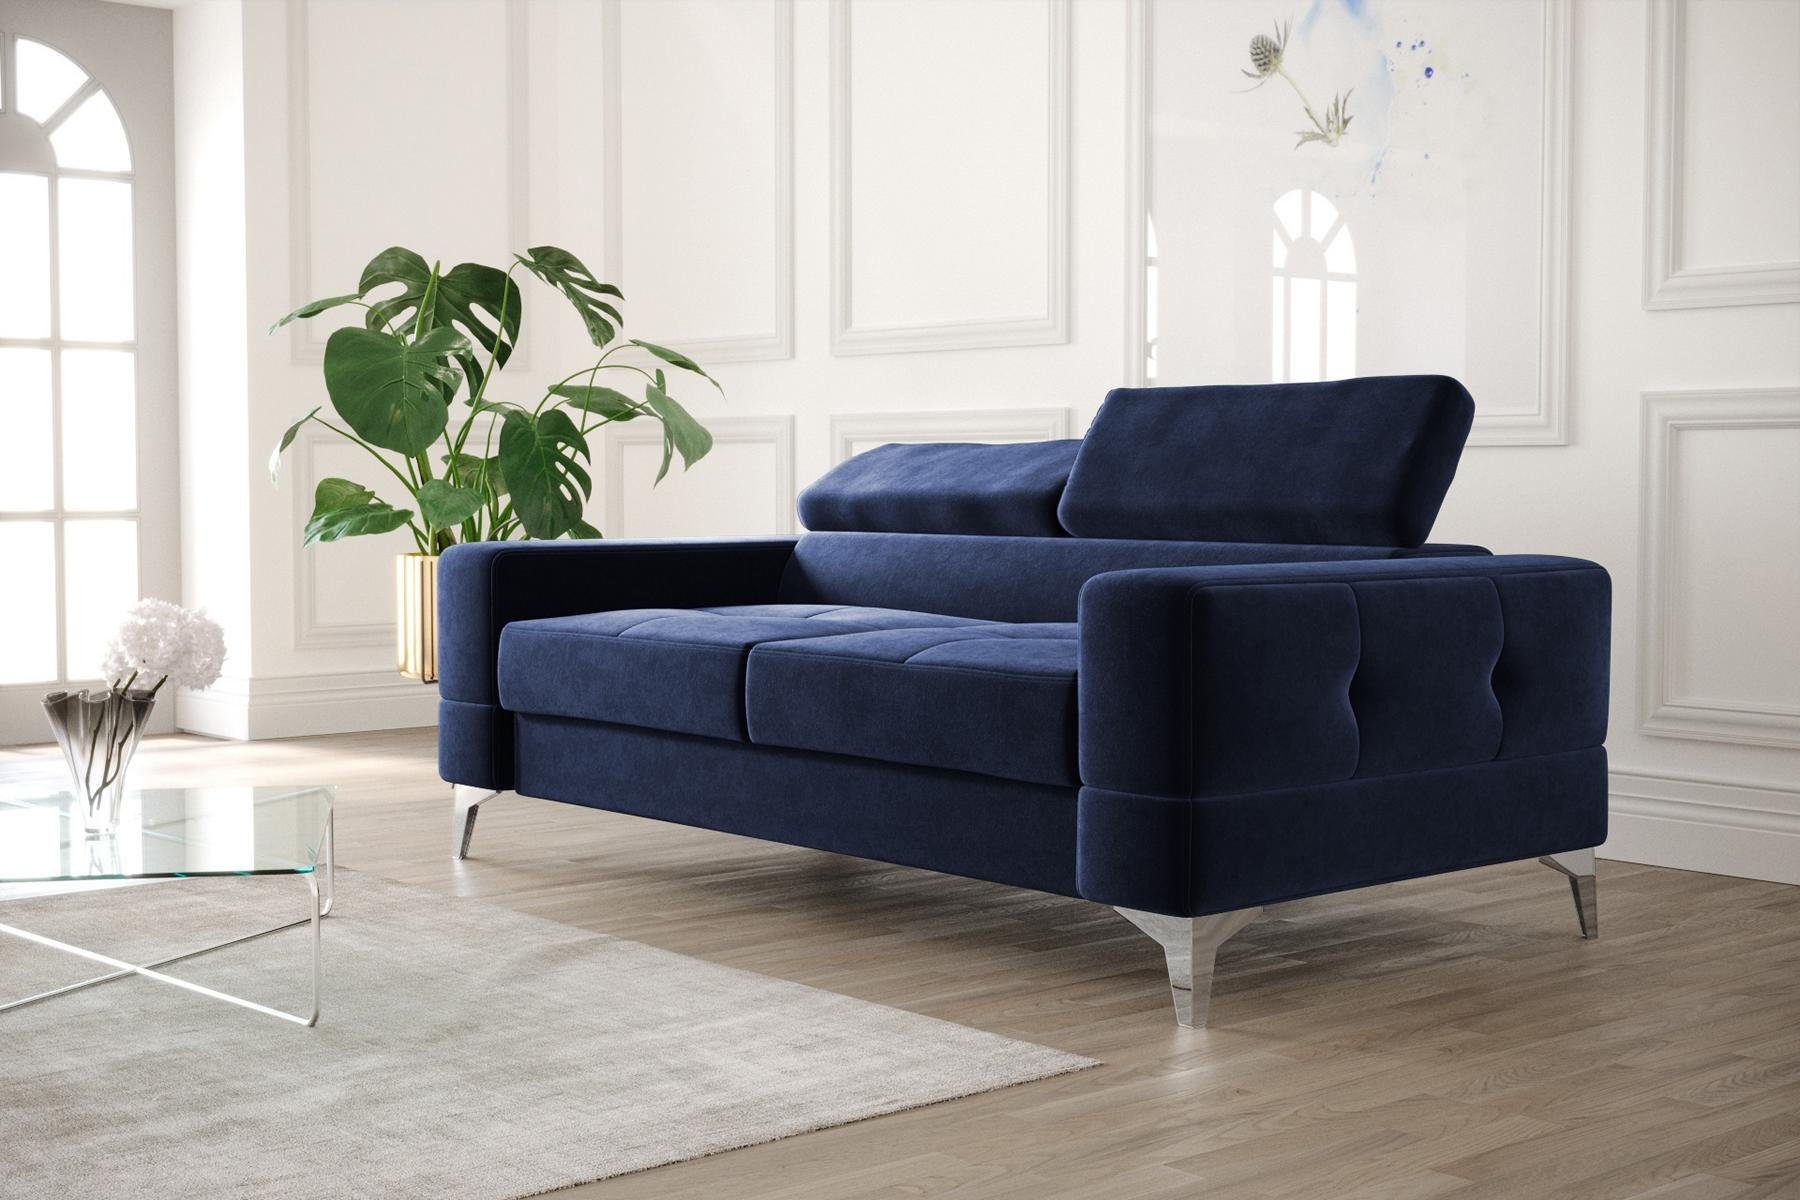 JVmoebel Sofa Schwarzer Zweisitzer Luxus Couch Moderne Wohnzimmer Sitzmöbel, Made in Europe Blau